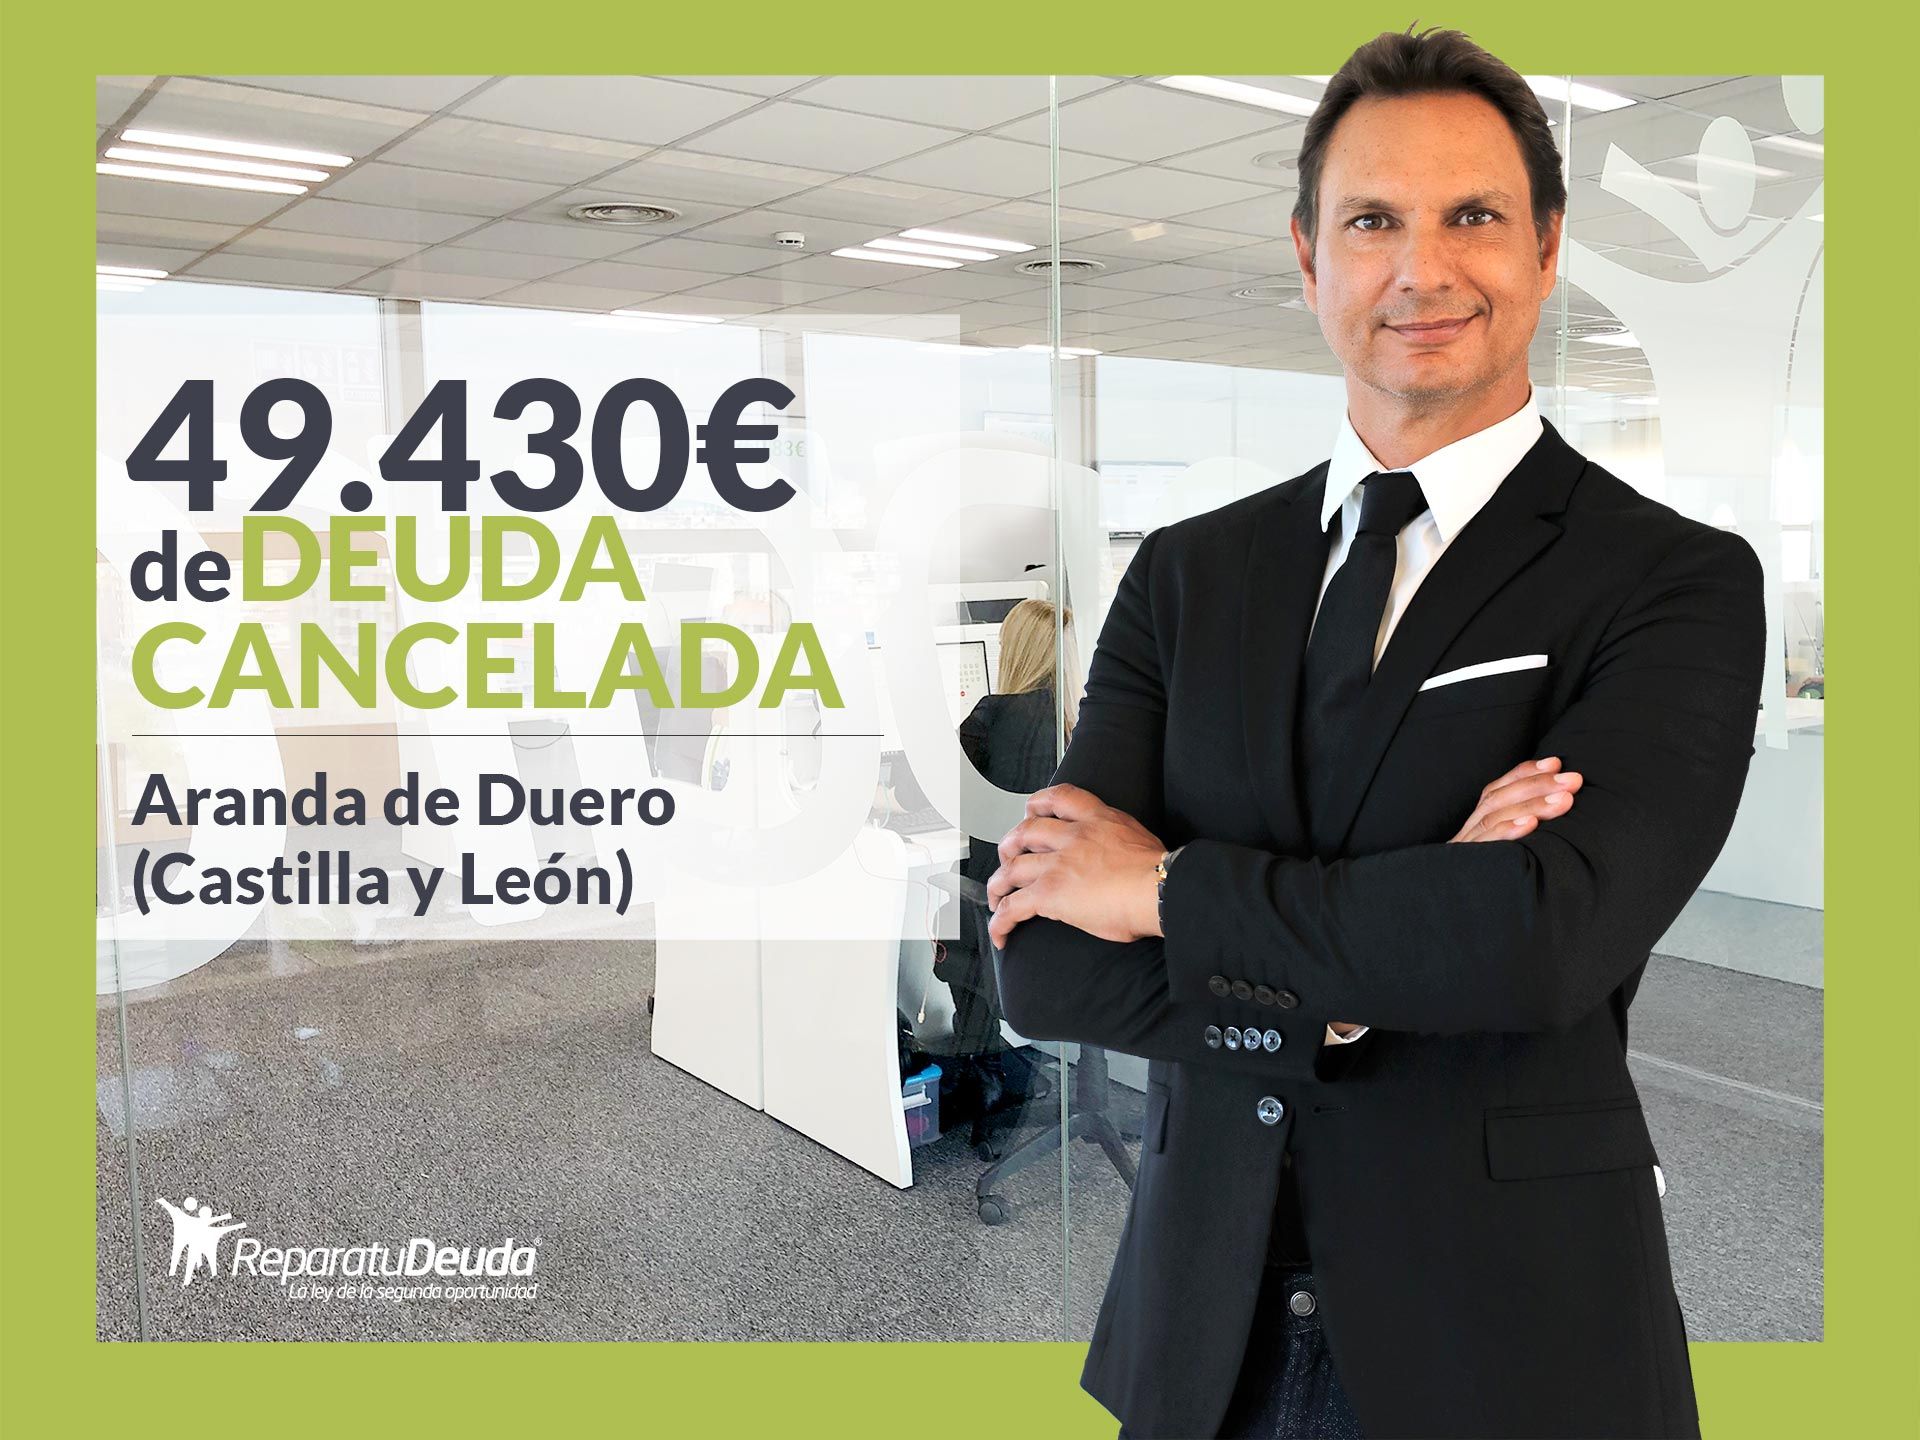 Repara tu Deuda Abogados cancela 49.430? en Aranda de Duero (Burgos) con la Ley de Segunda Oportunidad